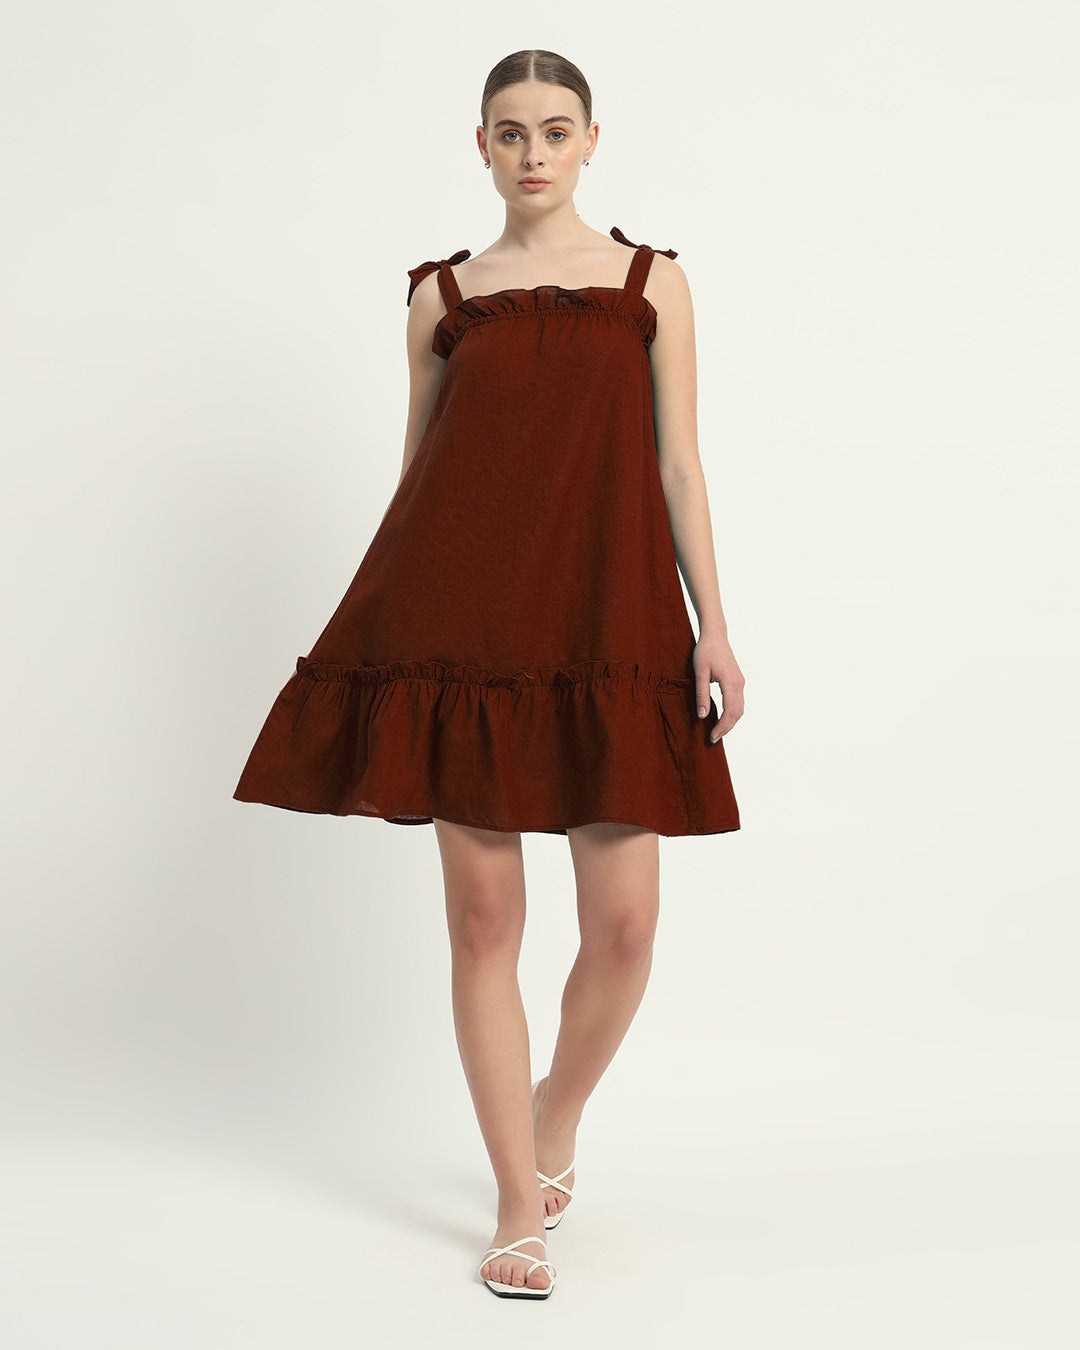 The Amalfi Rouge Cotton Dress